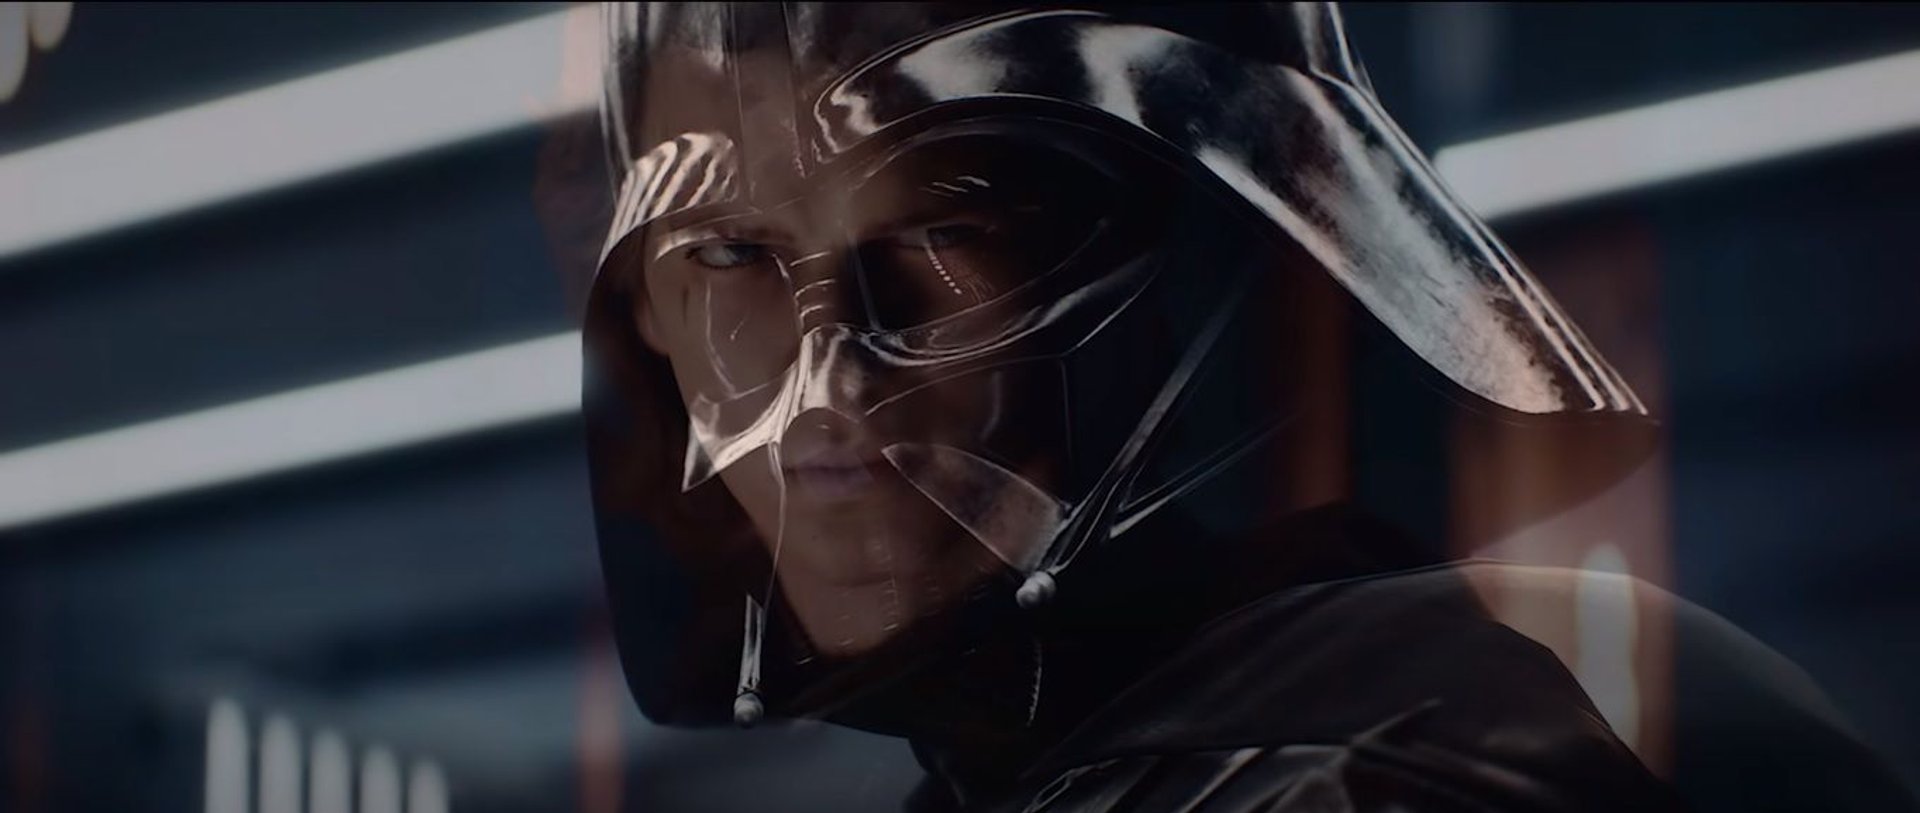 Screen ze zwiastuna Star Wars Battlefront 2 przedstawiający przejście Anakina i Vadera